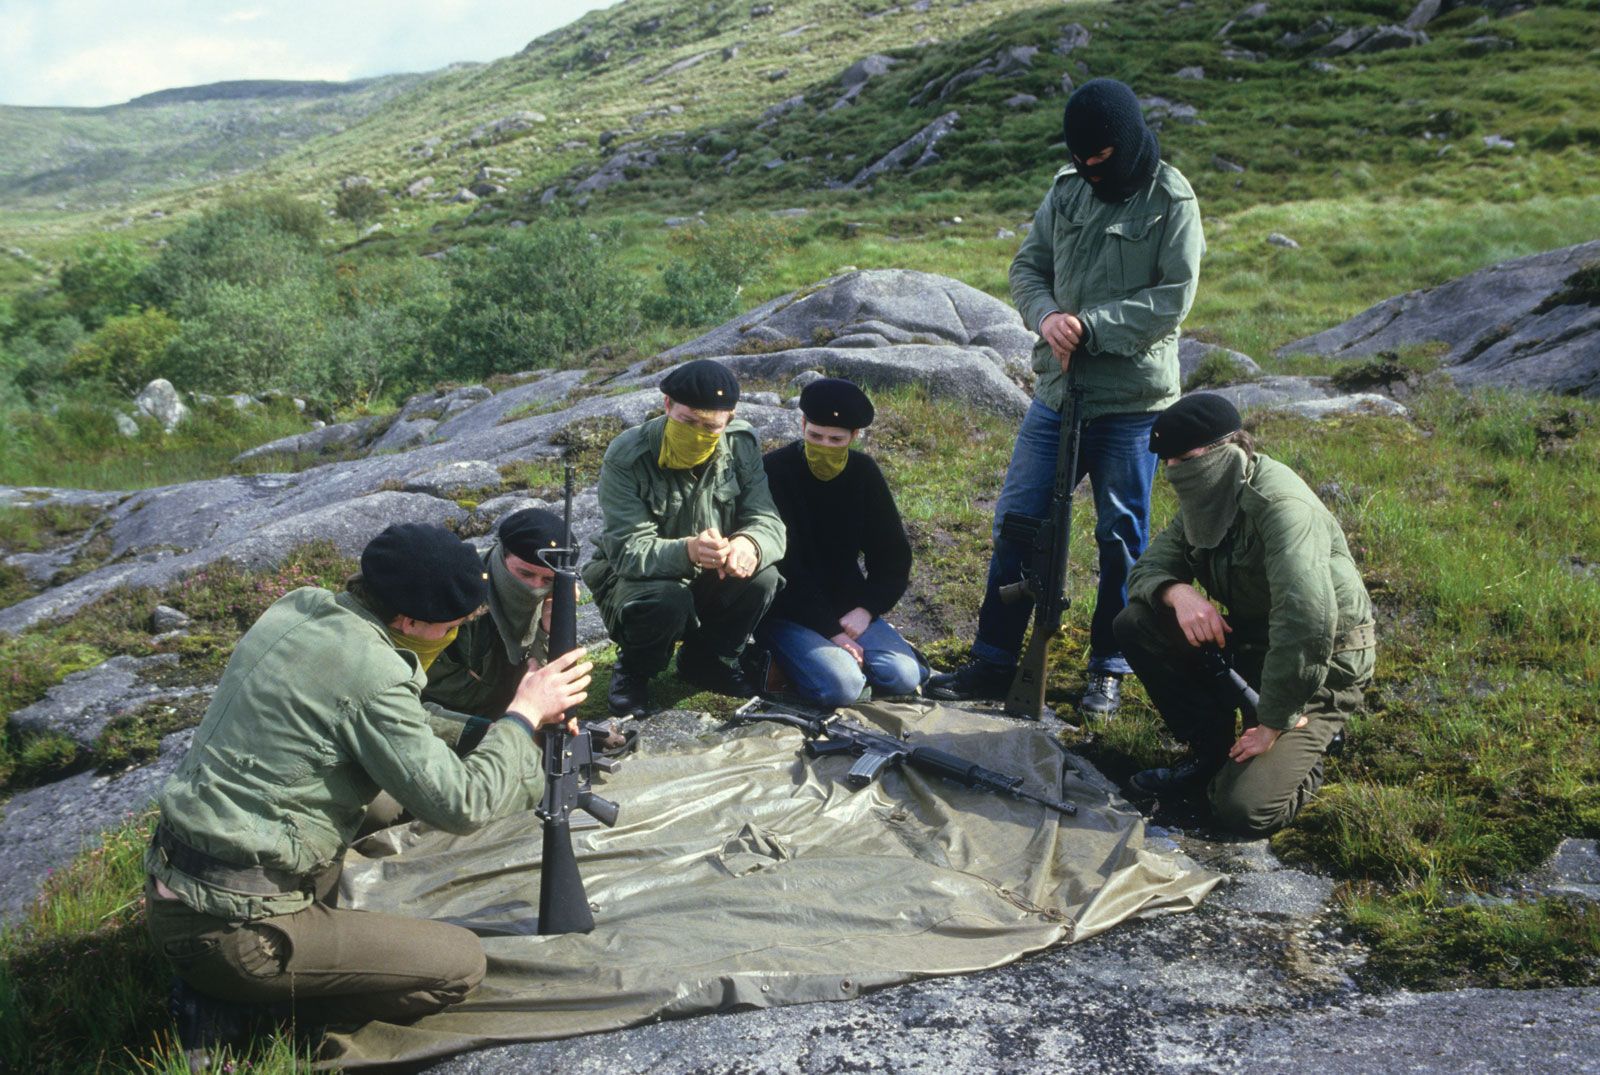 Бойцы ИРА на занятиях в полевом лагере, графство Донегол, Северная Ирландия, 1980-е гг.